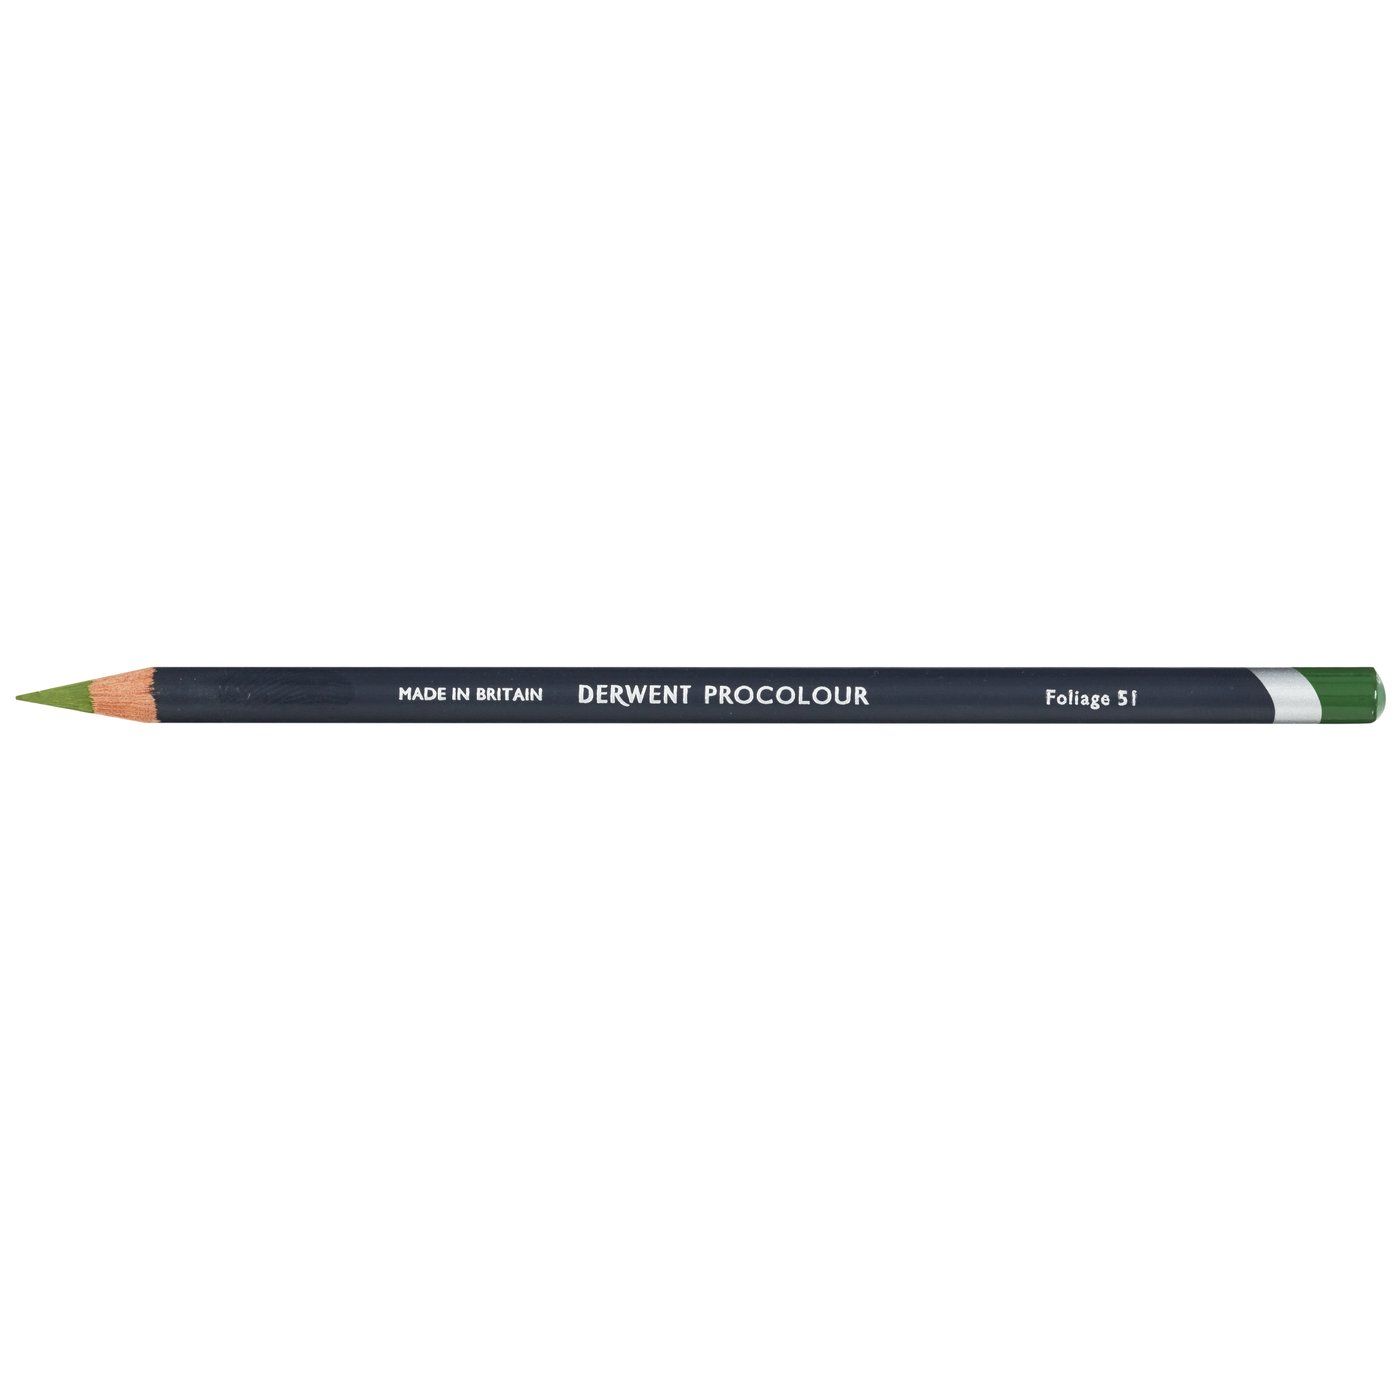 Derwent Procolour Pencil - 51 Foliage